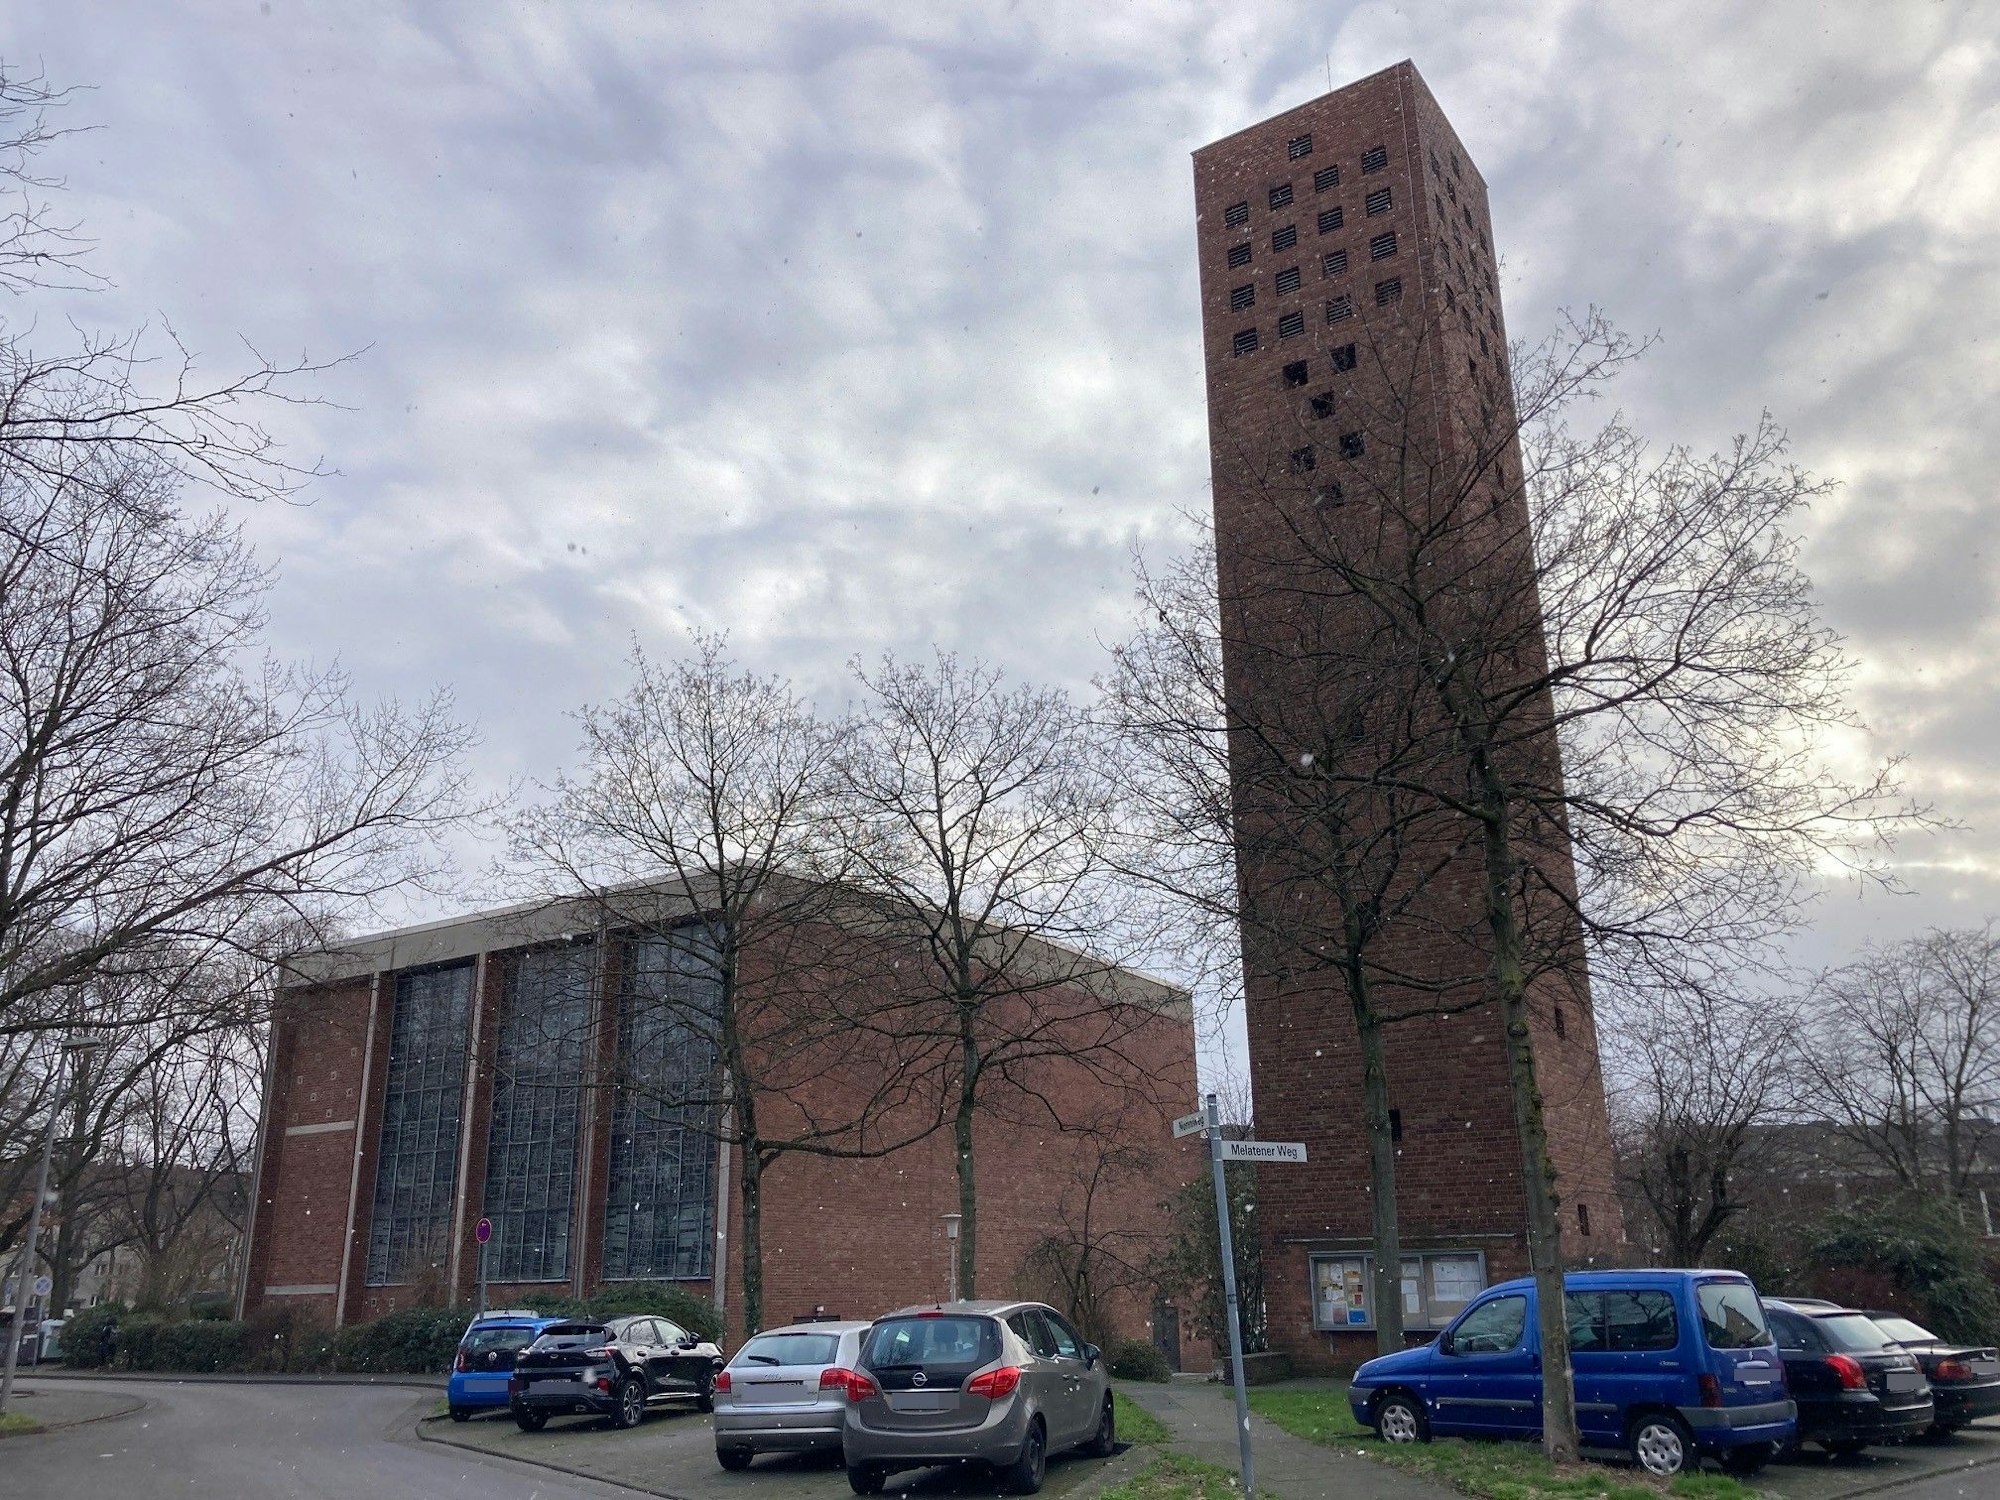 Vor einem fünfeckigen Ein Kirchengebäude mit separatem Turm parken Autos.